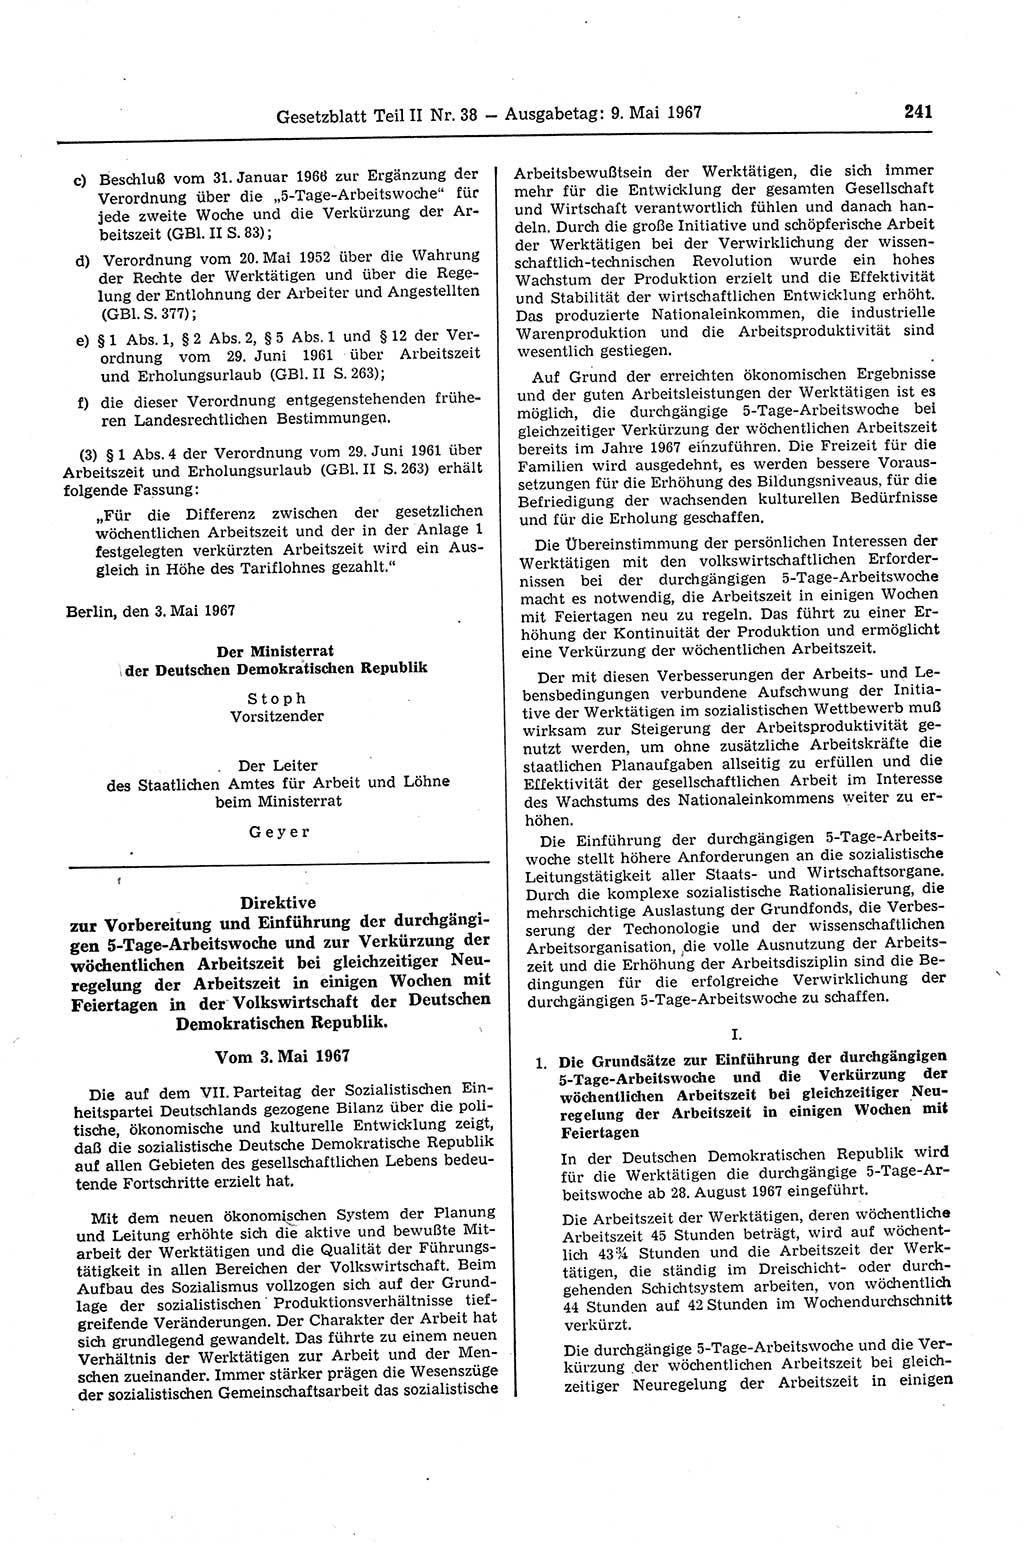 Gesetzblatt (GBl.) der Deutschen Demokratischen Republik (DDR) Teil ⅠⅠ 1967, Seite 241 (GBl. DDR ⅠⅠ 1967, S. 241)